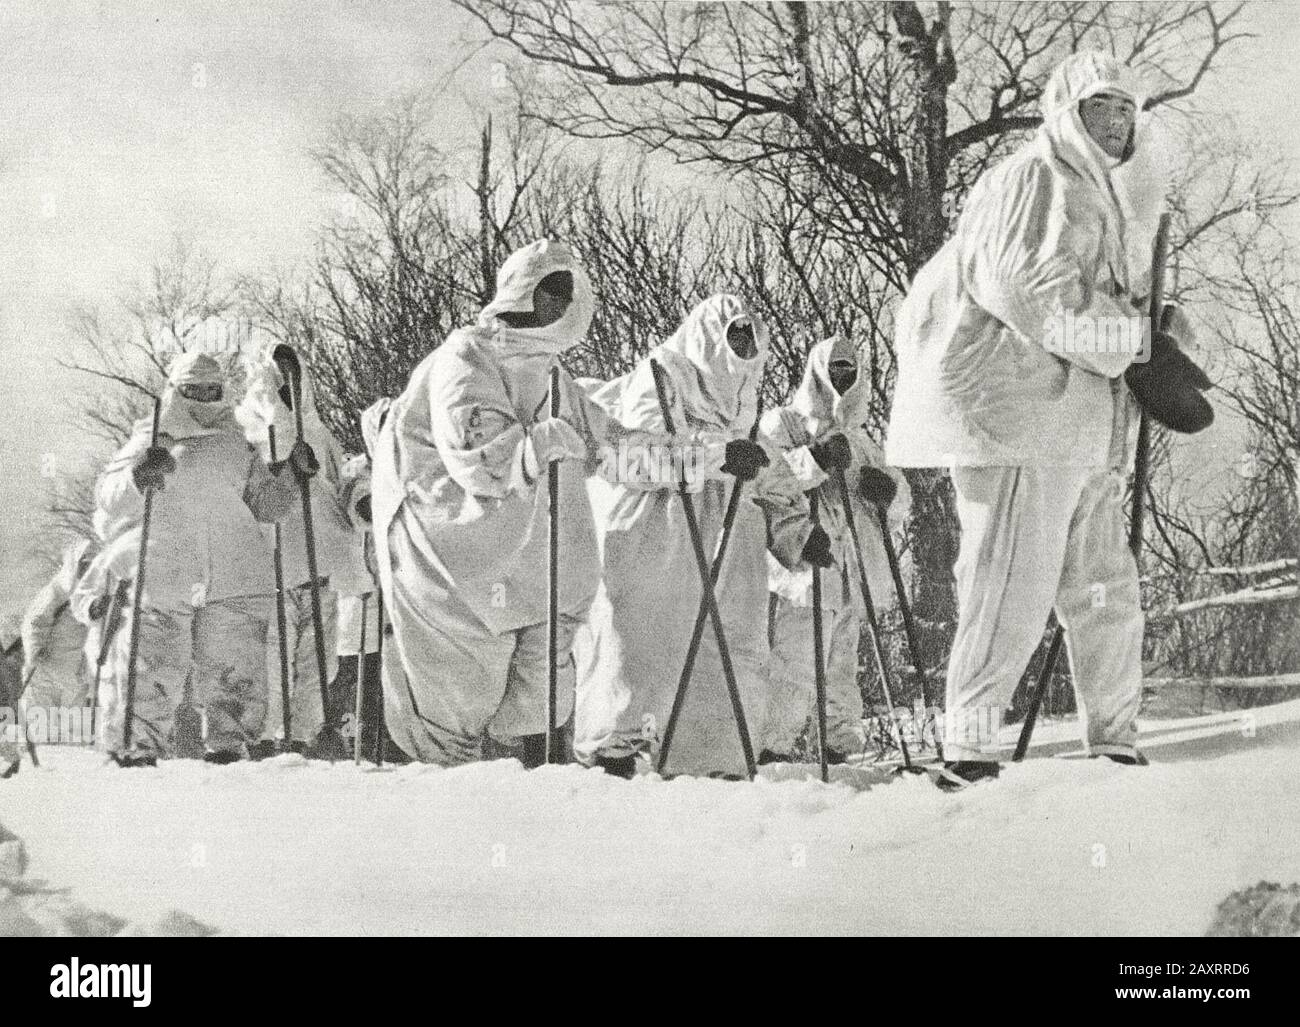 Armée rouge dans les années 1930. Du livre de propagande soviétique de 1937. Soldats soviétiques en skis en manteaux de camouflage d'hiver Banque D'Images